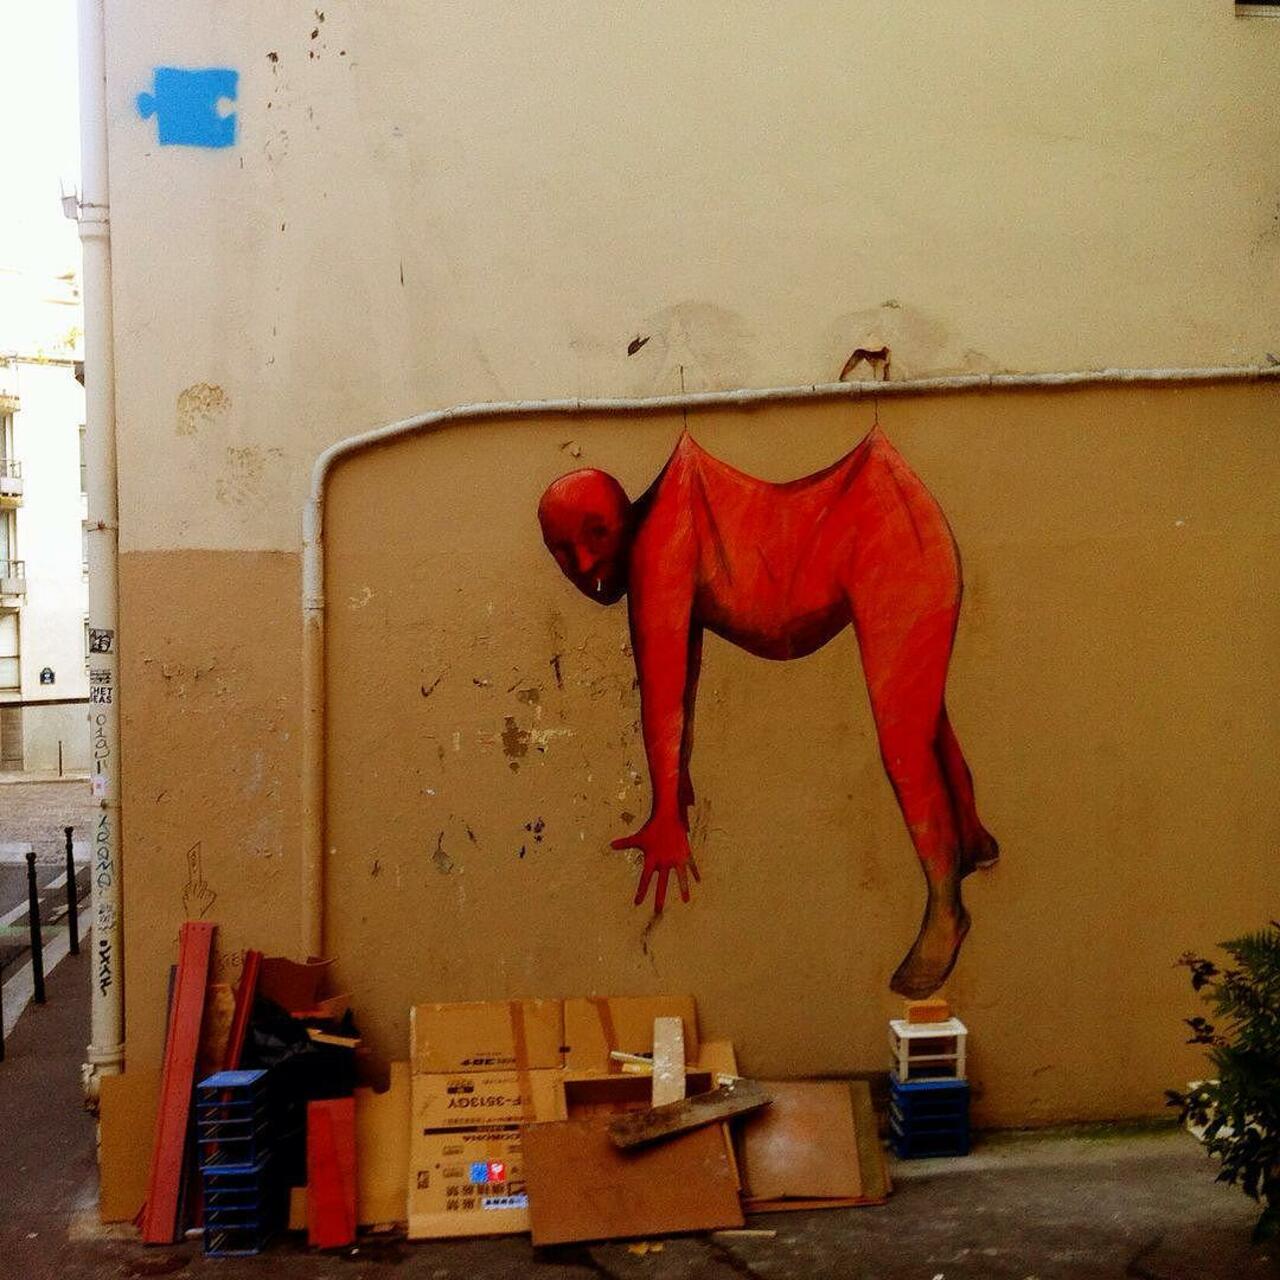 #Paris #graffiti photo by @noamzucker http://ift.tt/1LvKqoD #StreetArt http://t.co/WNS4H7qRFH